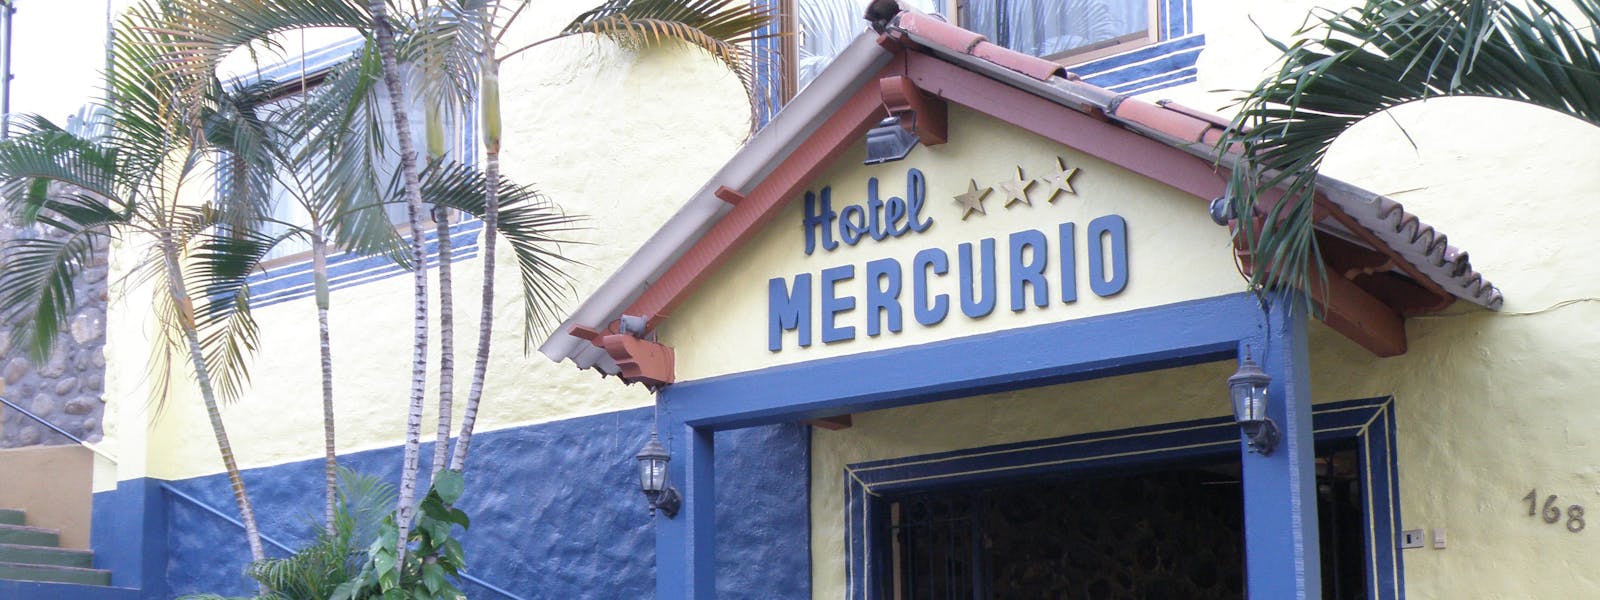 Hotel Mercurio es un hotel gay en puerto vallarta. Tu segundo hogar en puerto vallarta!